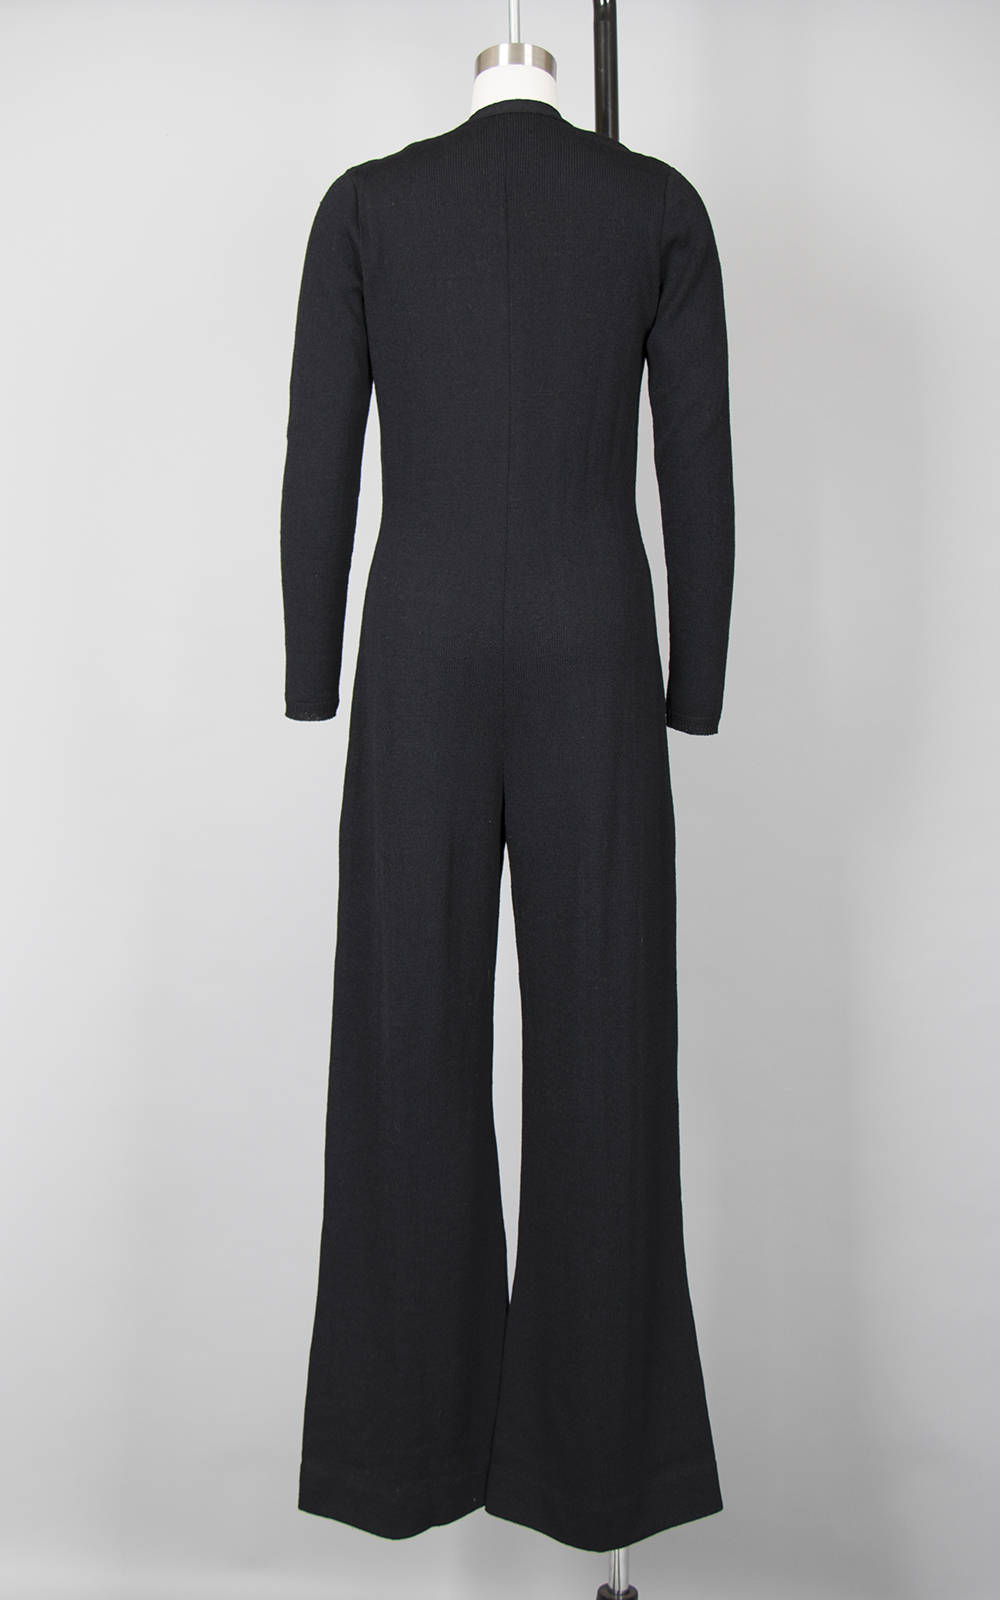 Vintage 1970s Jumpsuit | 70s Knit Black Wool Long Sleeve Button Up Wide Leg Jumpsuit (medium)